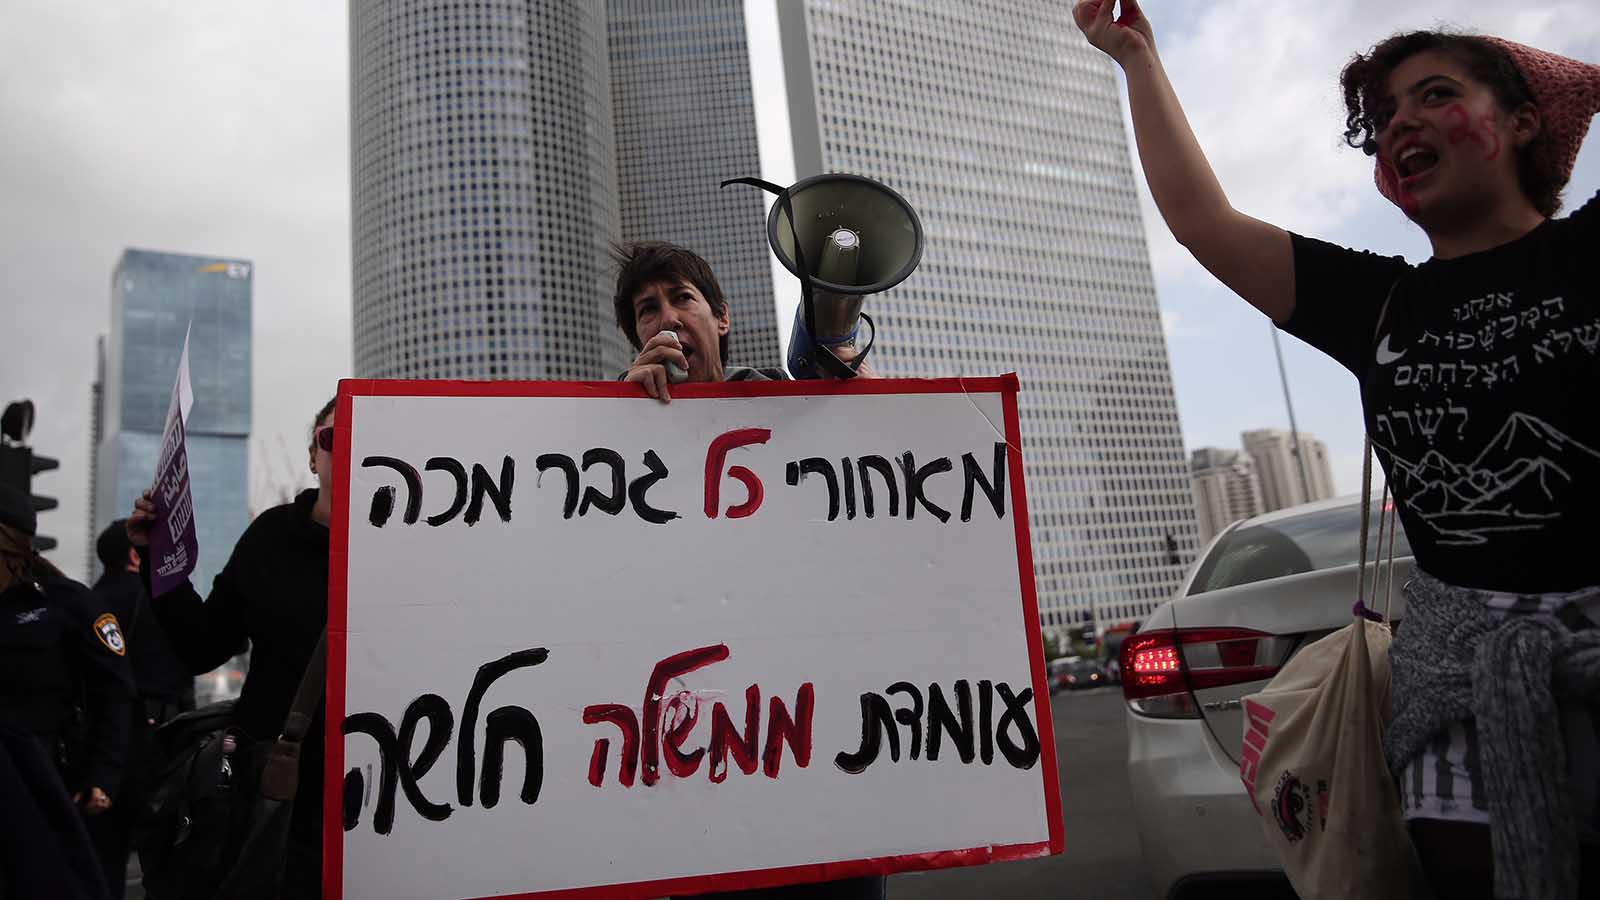 פעילות מפגינות מול קרית הממשלה בתל-אביב במחאה על רצח נשים (צילום: מרים אלסטר / פלאש 90).